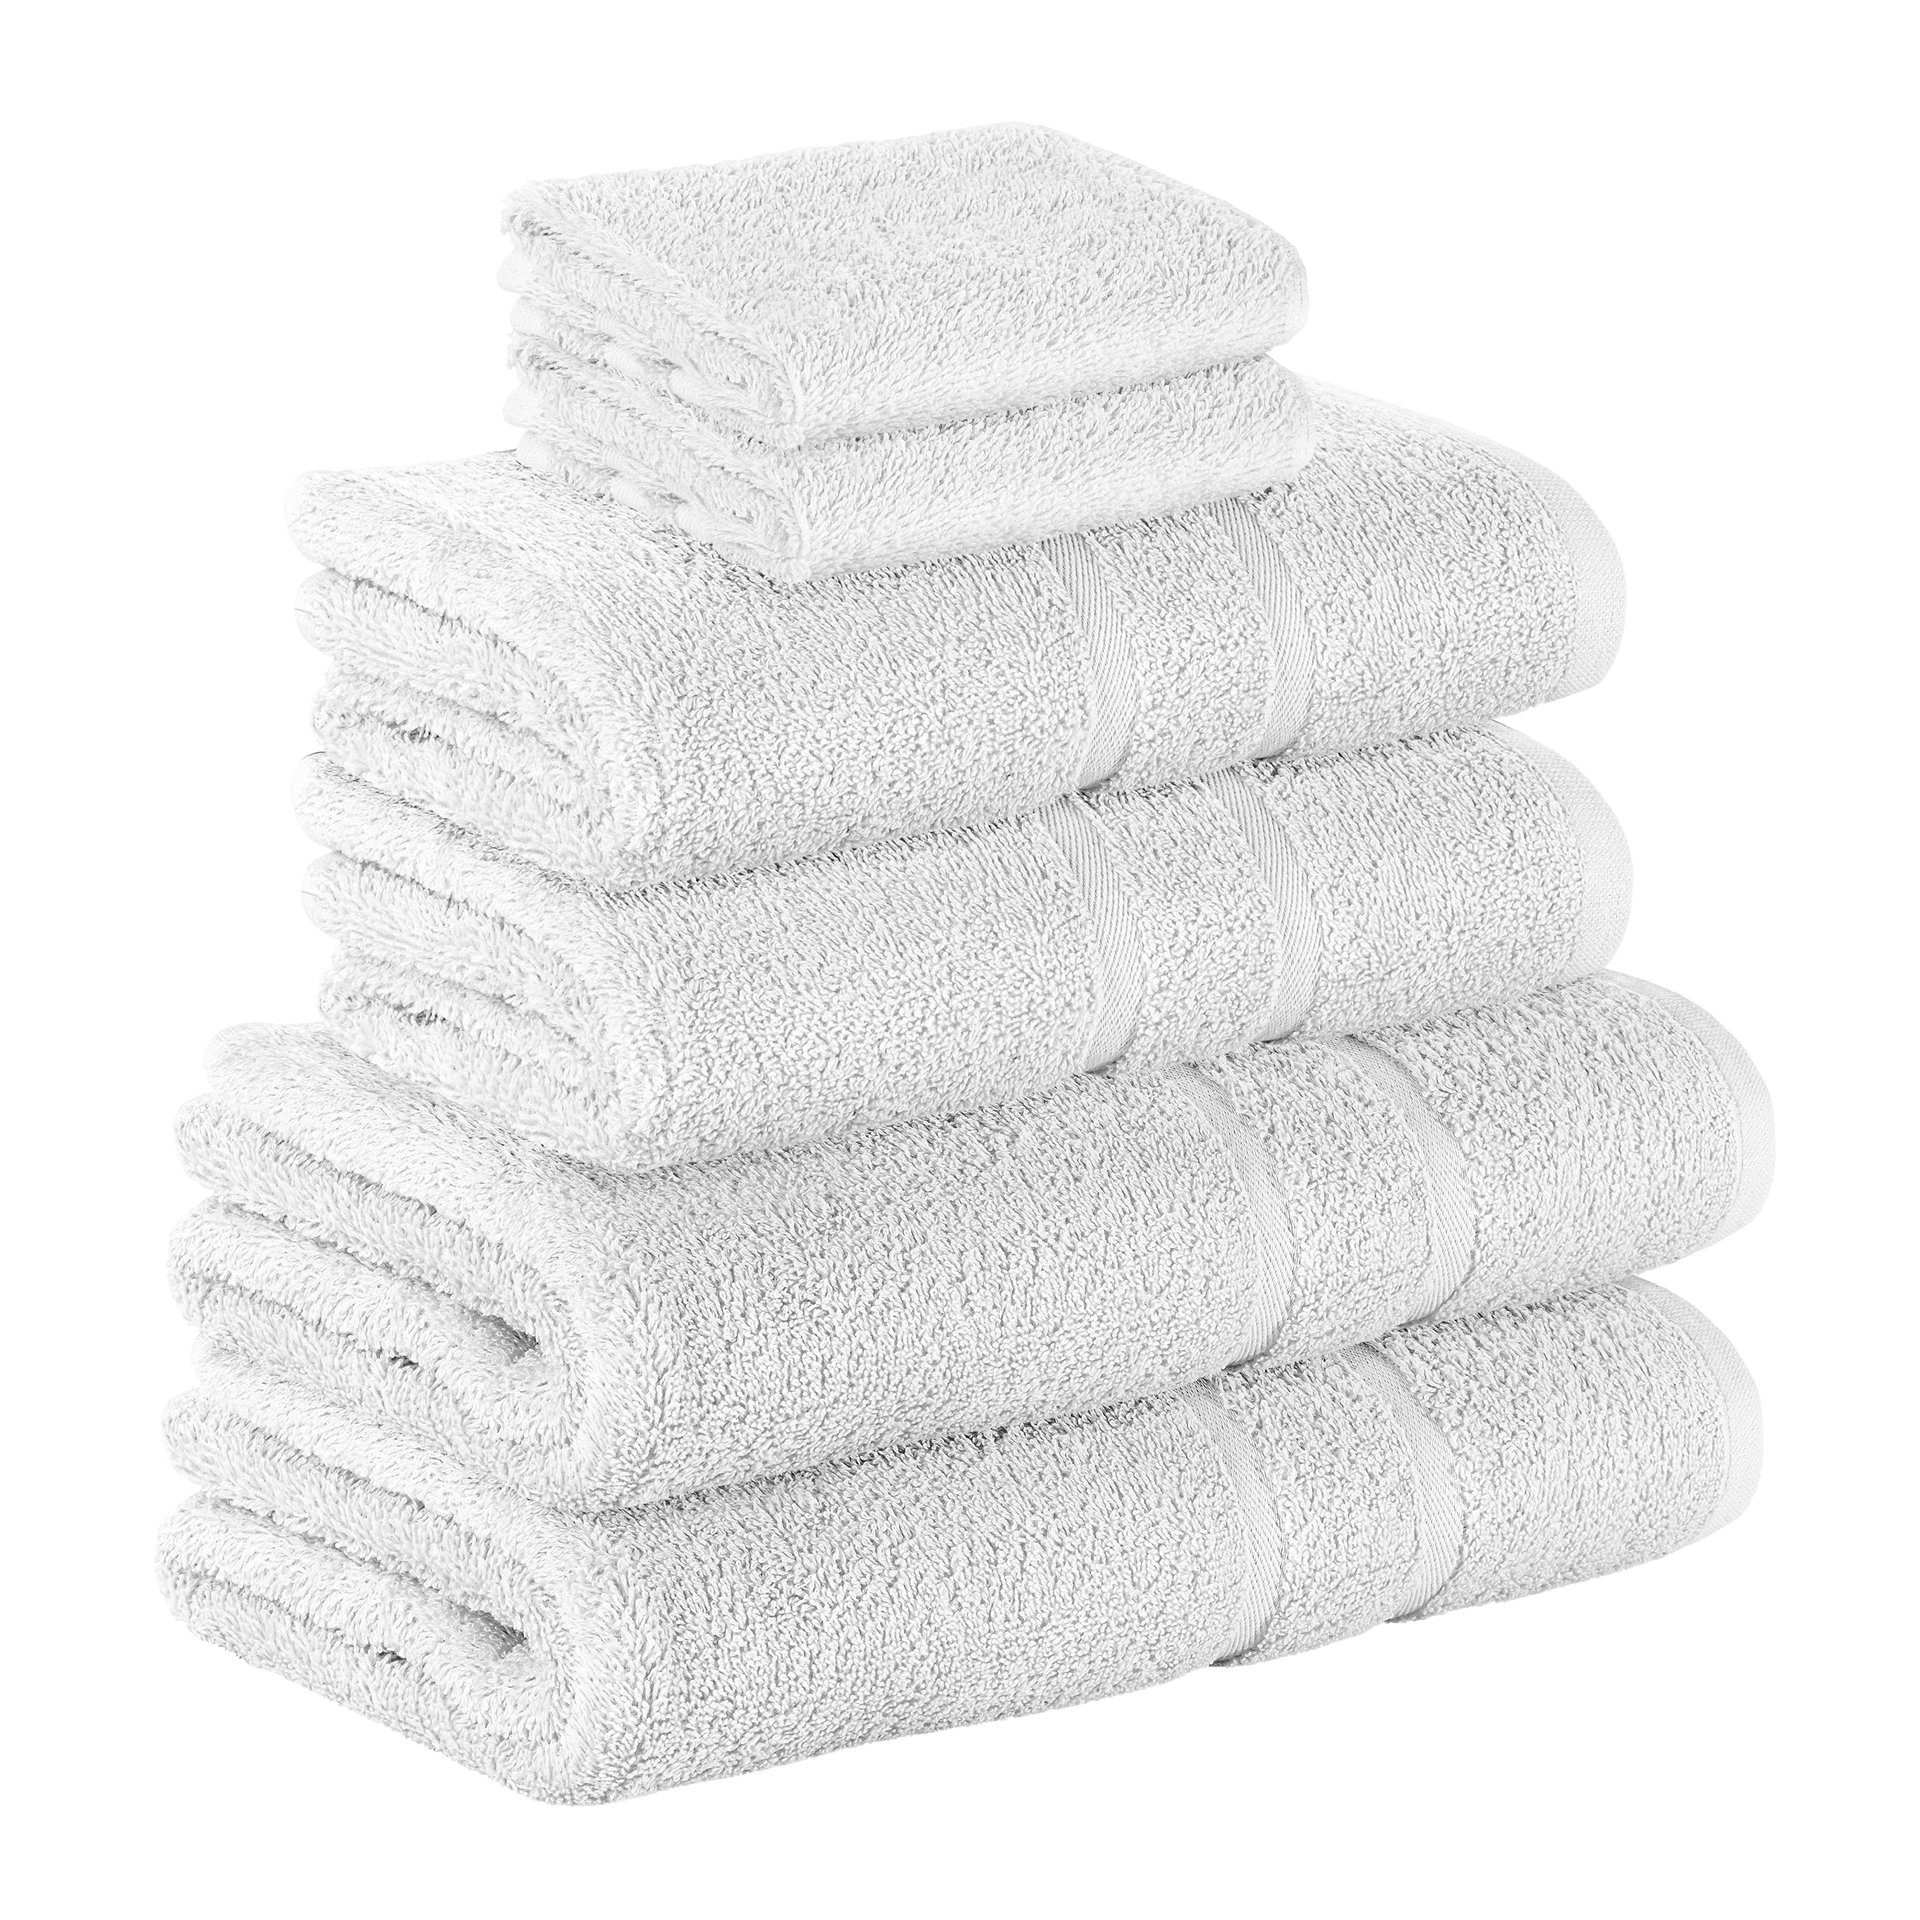 StickandShine Handtuch Set 2x Gästehandtuch 2x Handtücher 2x Duschtücher als SET in verschiedenen Farben (6 Teilig) 100% Baumwolle 500 GSM Frottee 6er Handtuch Pack, 100% Baumwolle 500GSM Weiß | Handtuch-Sets